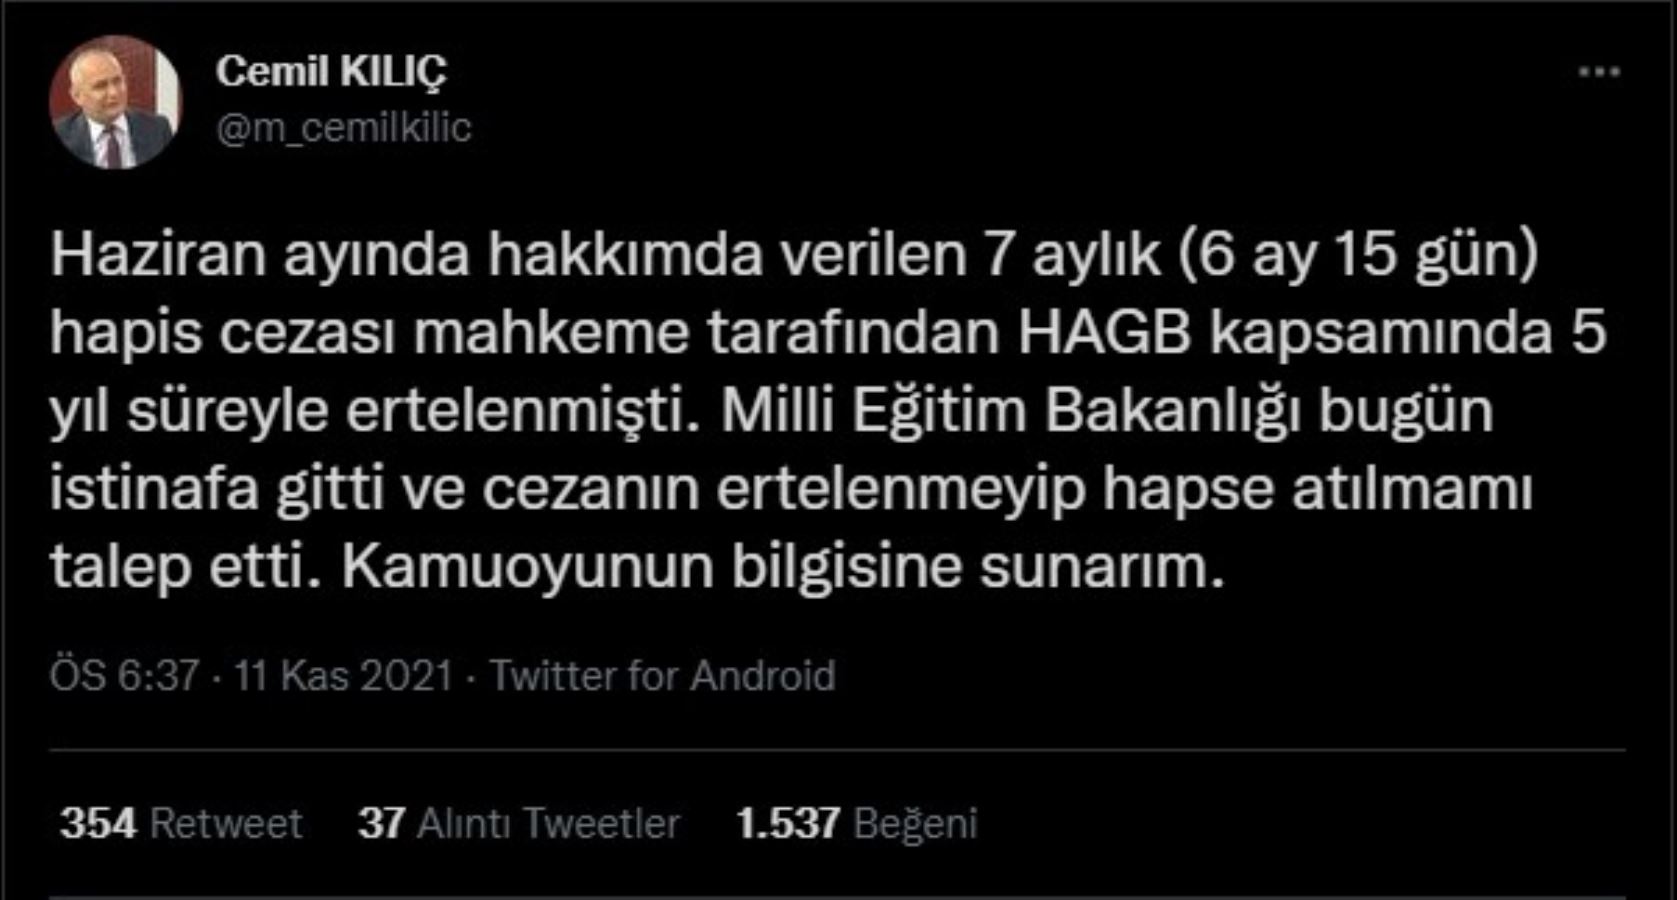 Atatürkçü İlahiyatçı Cemil Kılıç'ın ertelenen cezasına Milli Eğitim Bakanlığı itiraz etti